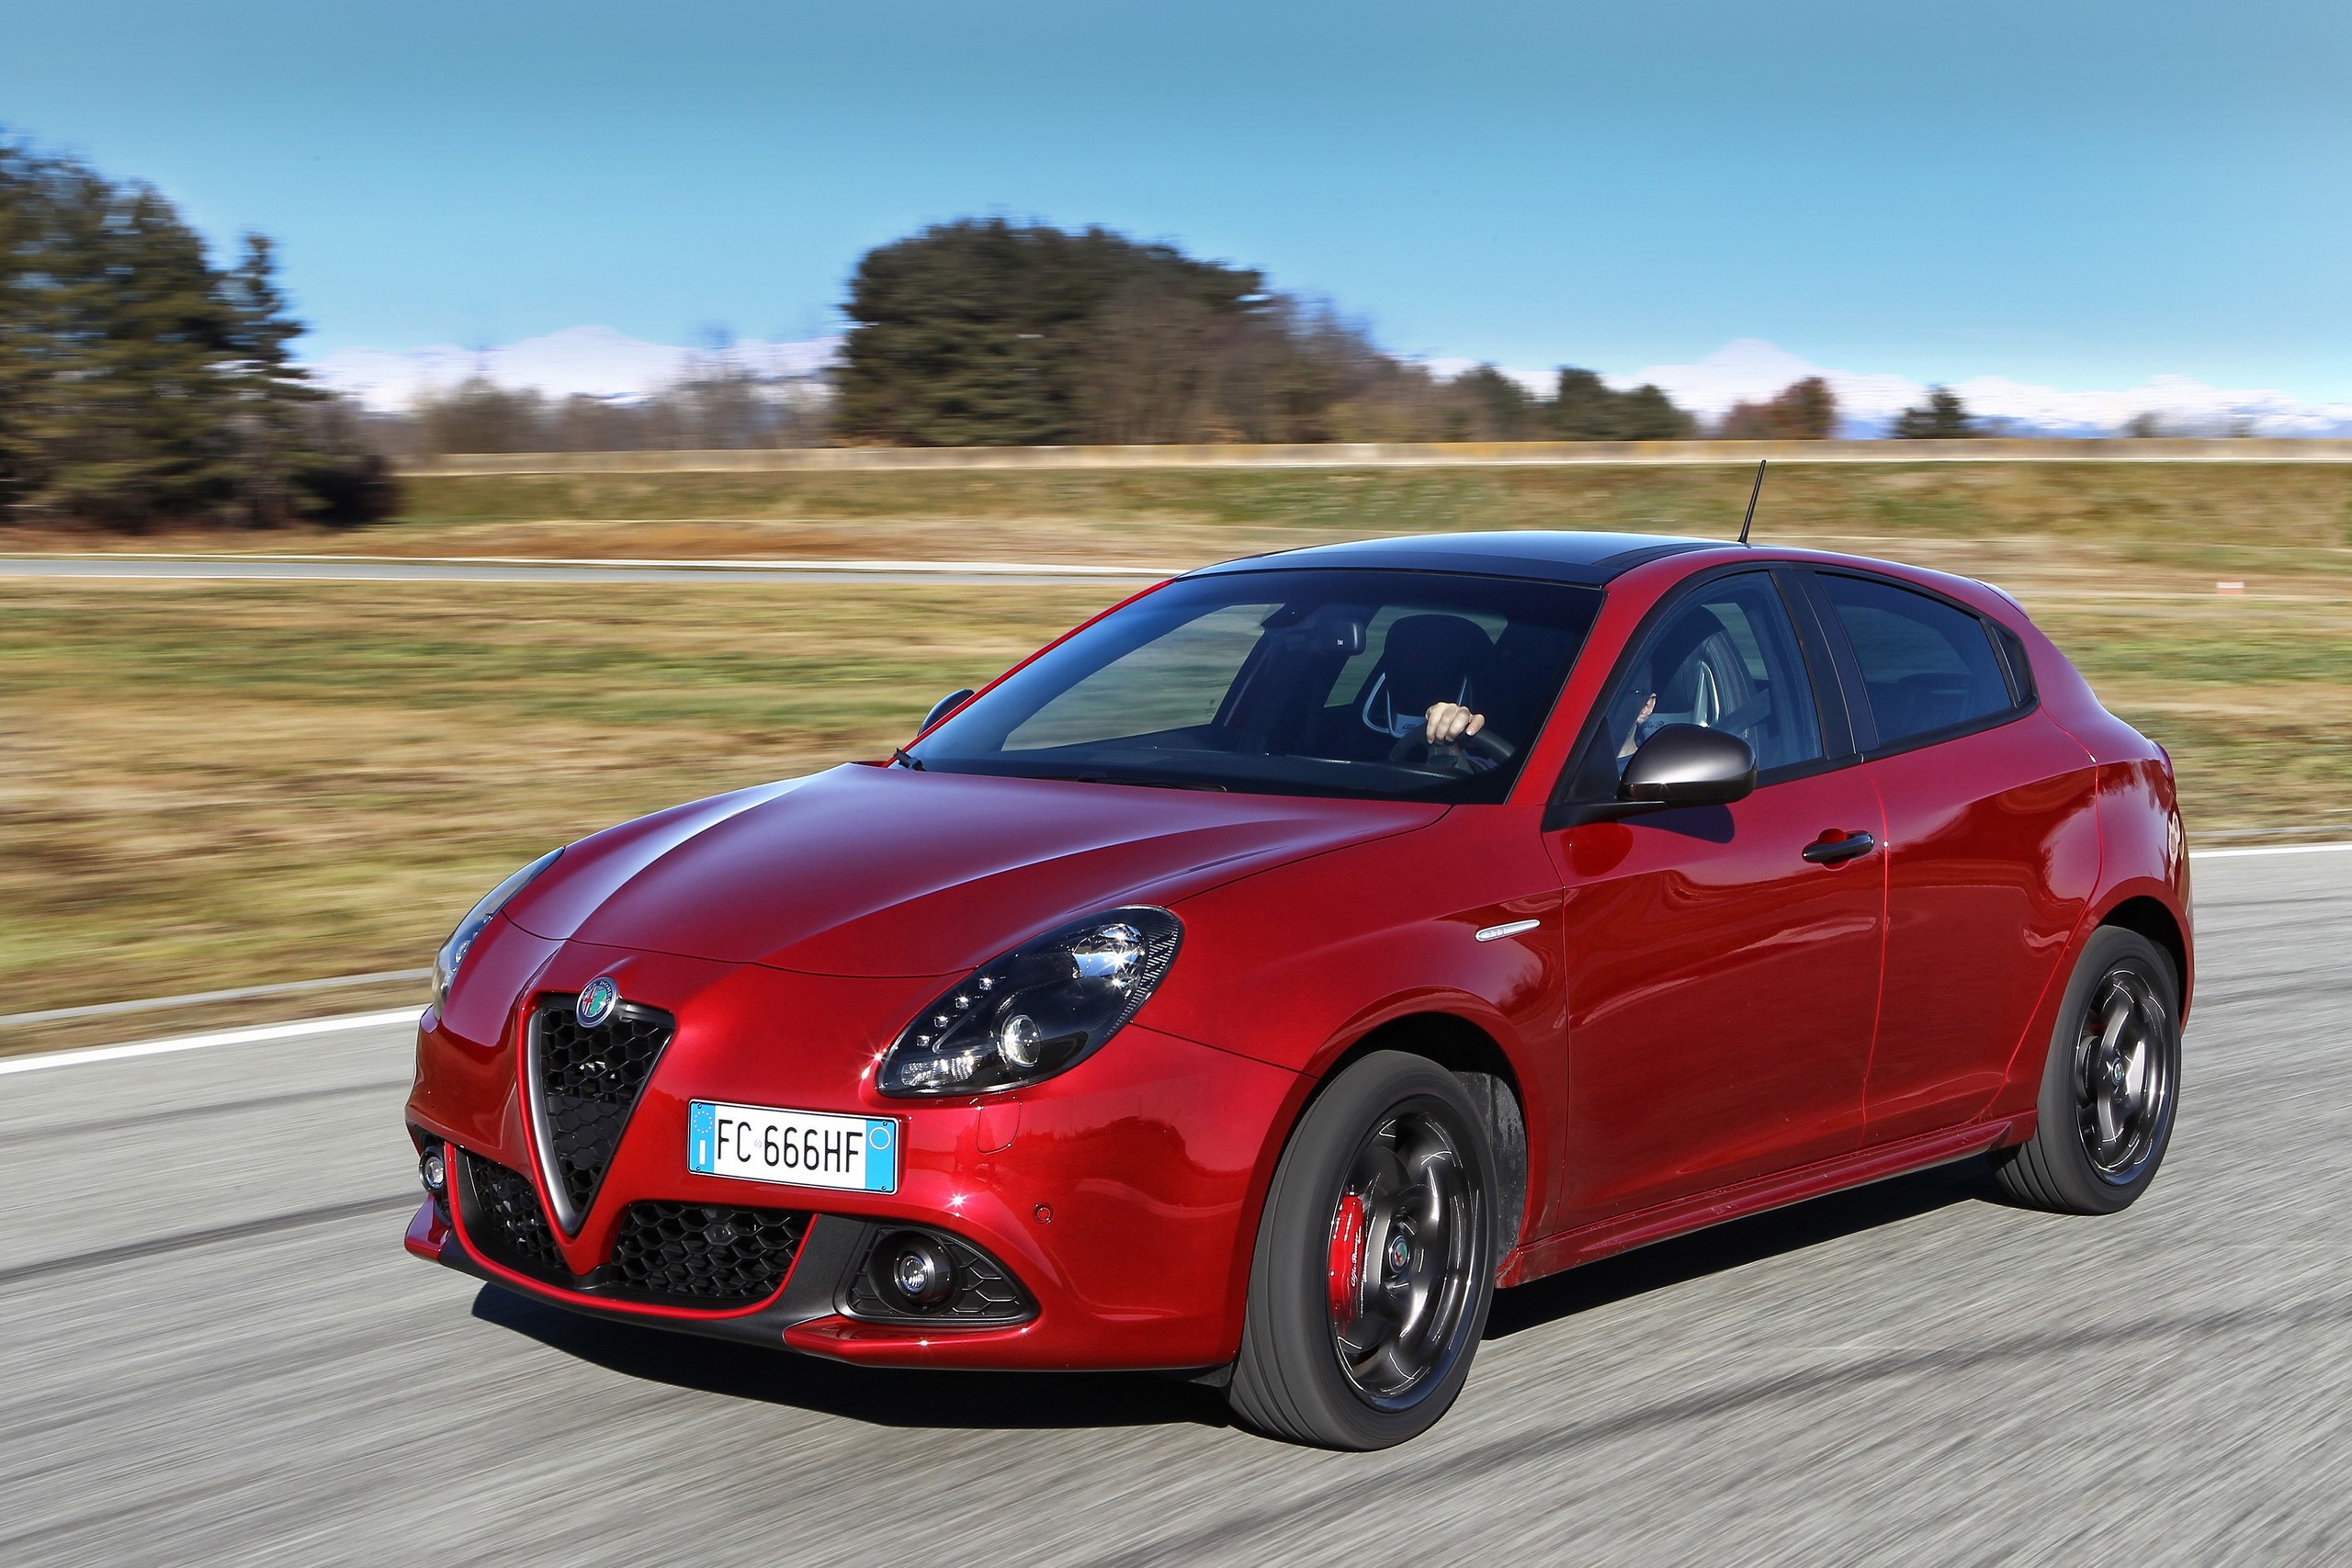 Alfa Romeo Giulietta Finale Edizione Sends Off The Italian Hatch